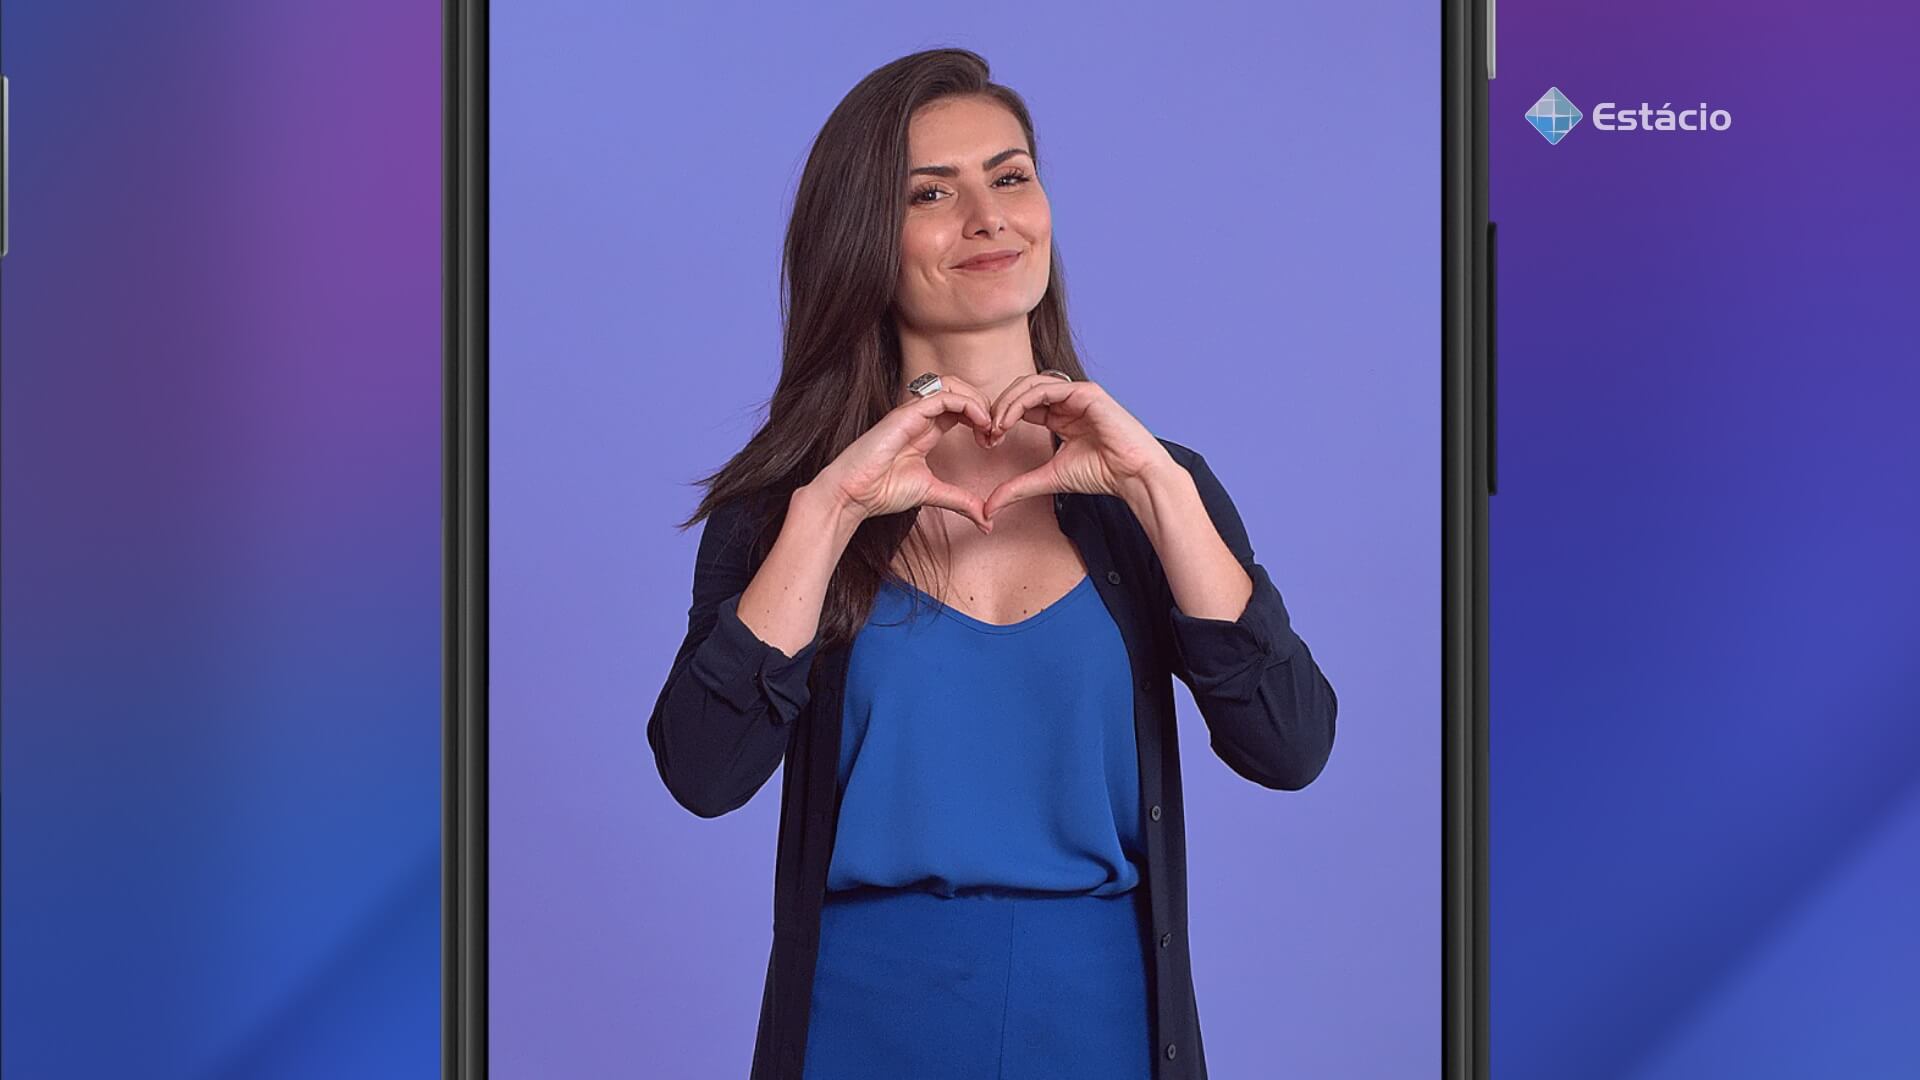 Foto da especialista em finanças, Nathalia Arcuri, fazendo o formato de um coração com as mãos, e o logo da Estácio no canto superior direito, tudo em fundo de cor azul.